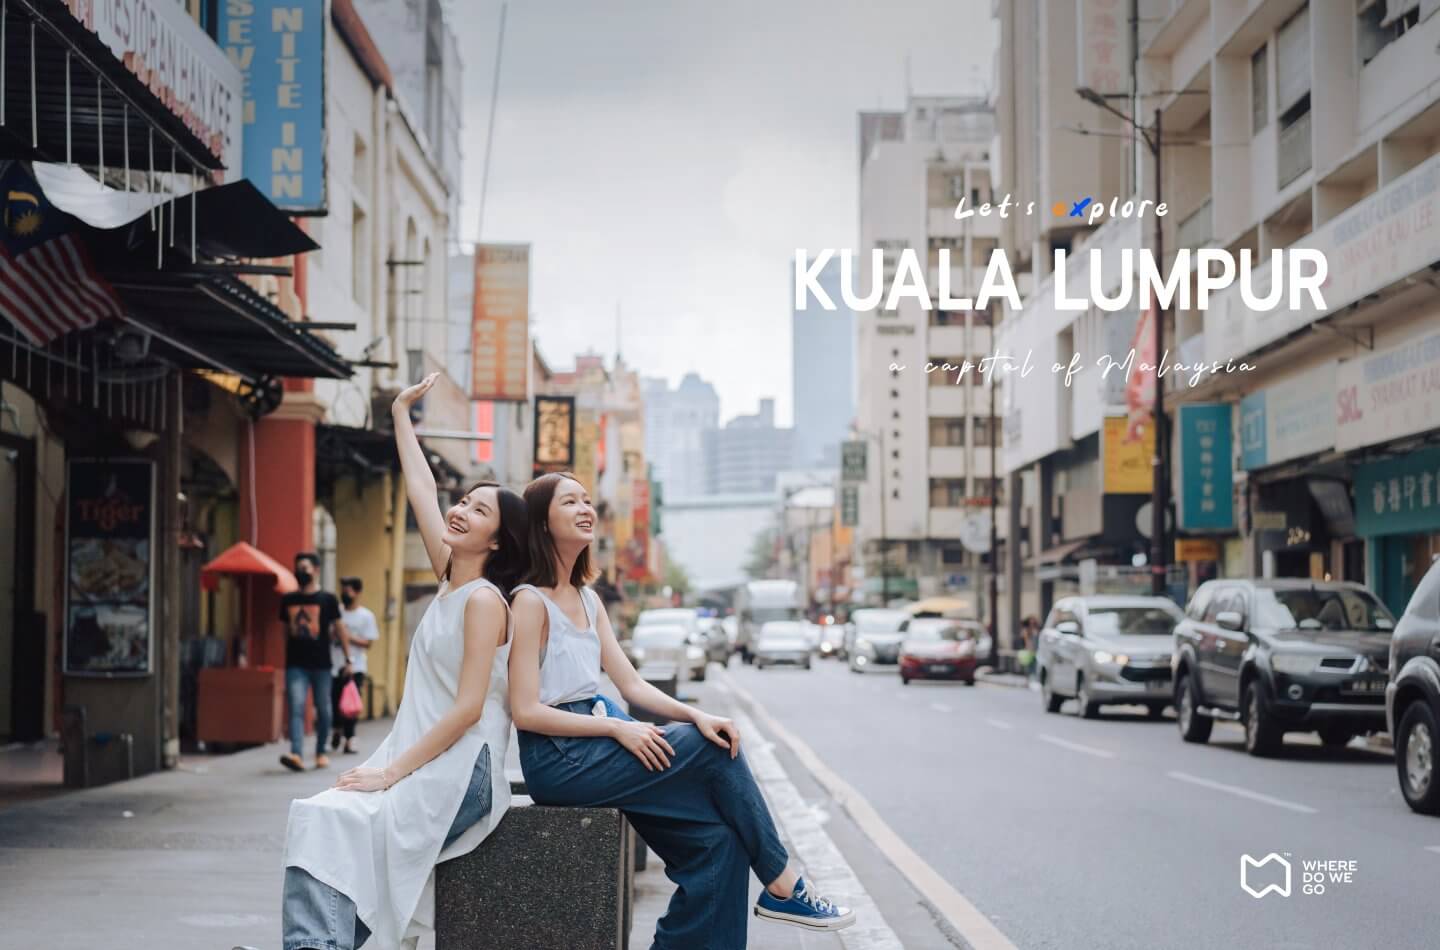 Let’s Explore Kuala Lumpur